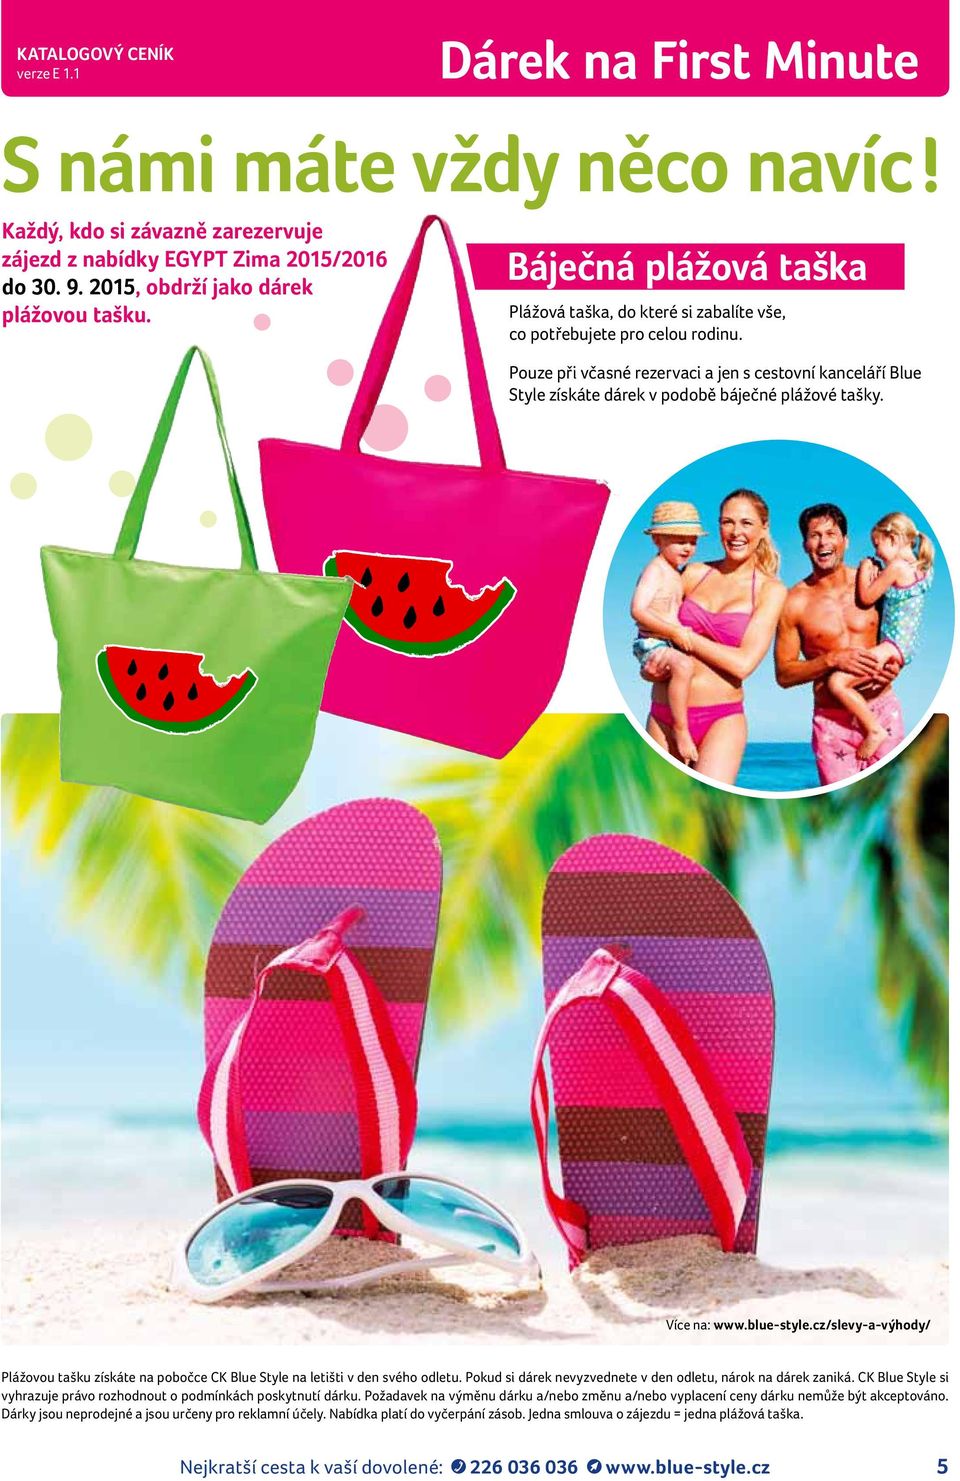 Pouze při včasné rezervaci a jen s cestovní kanceláří Blue Style získáte dárek v podobě báječné plážové tašky. Více na: www.blue-style.